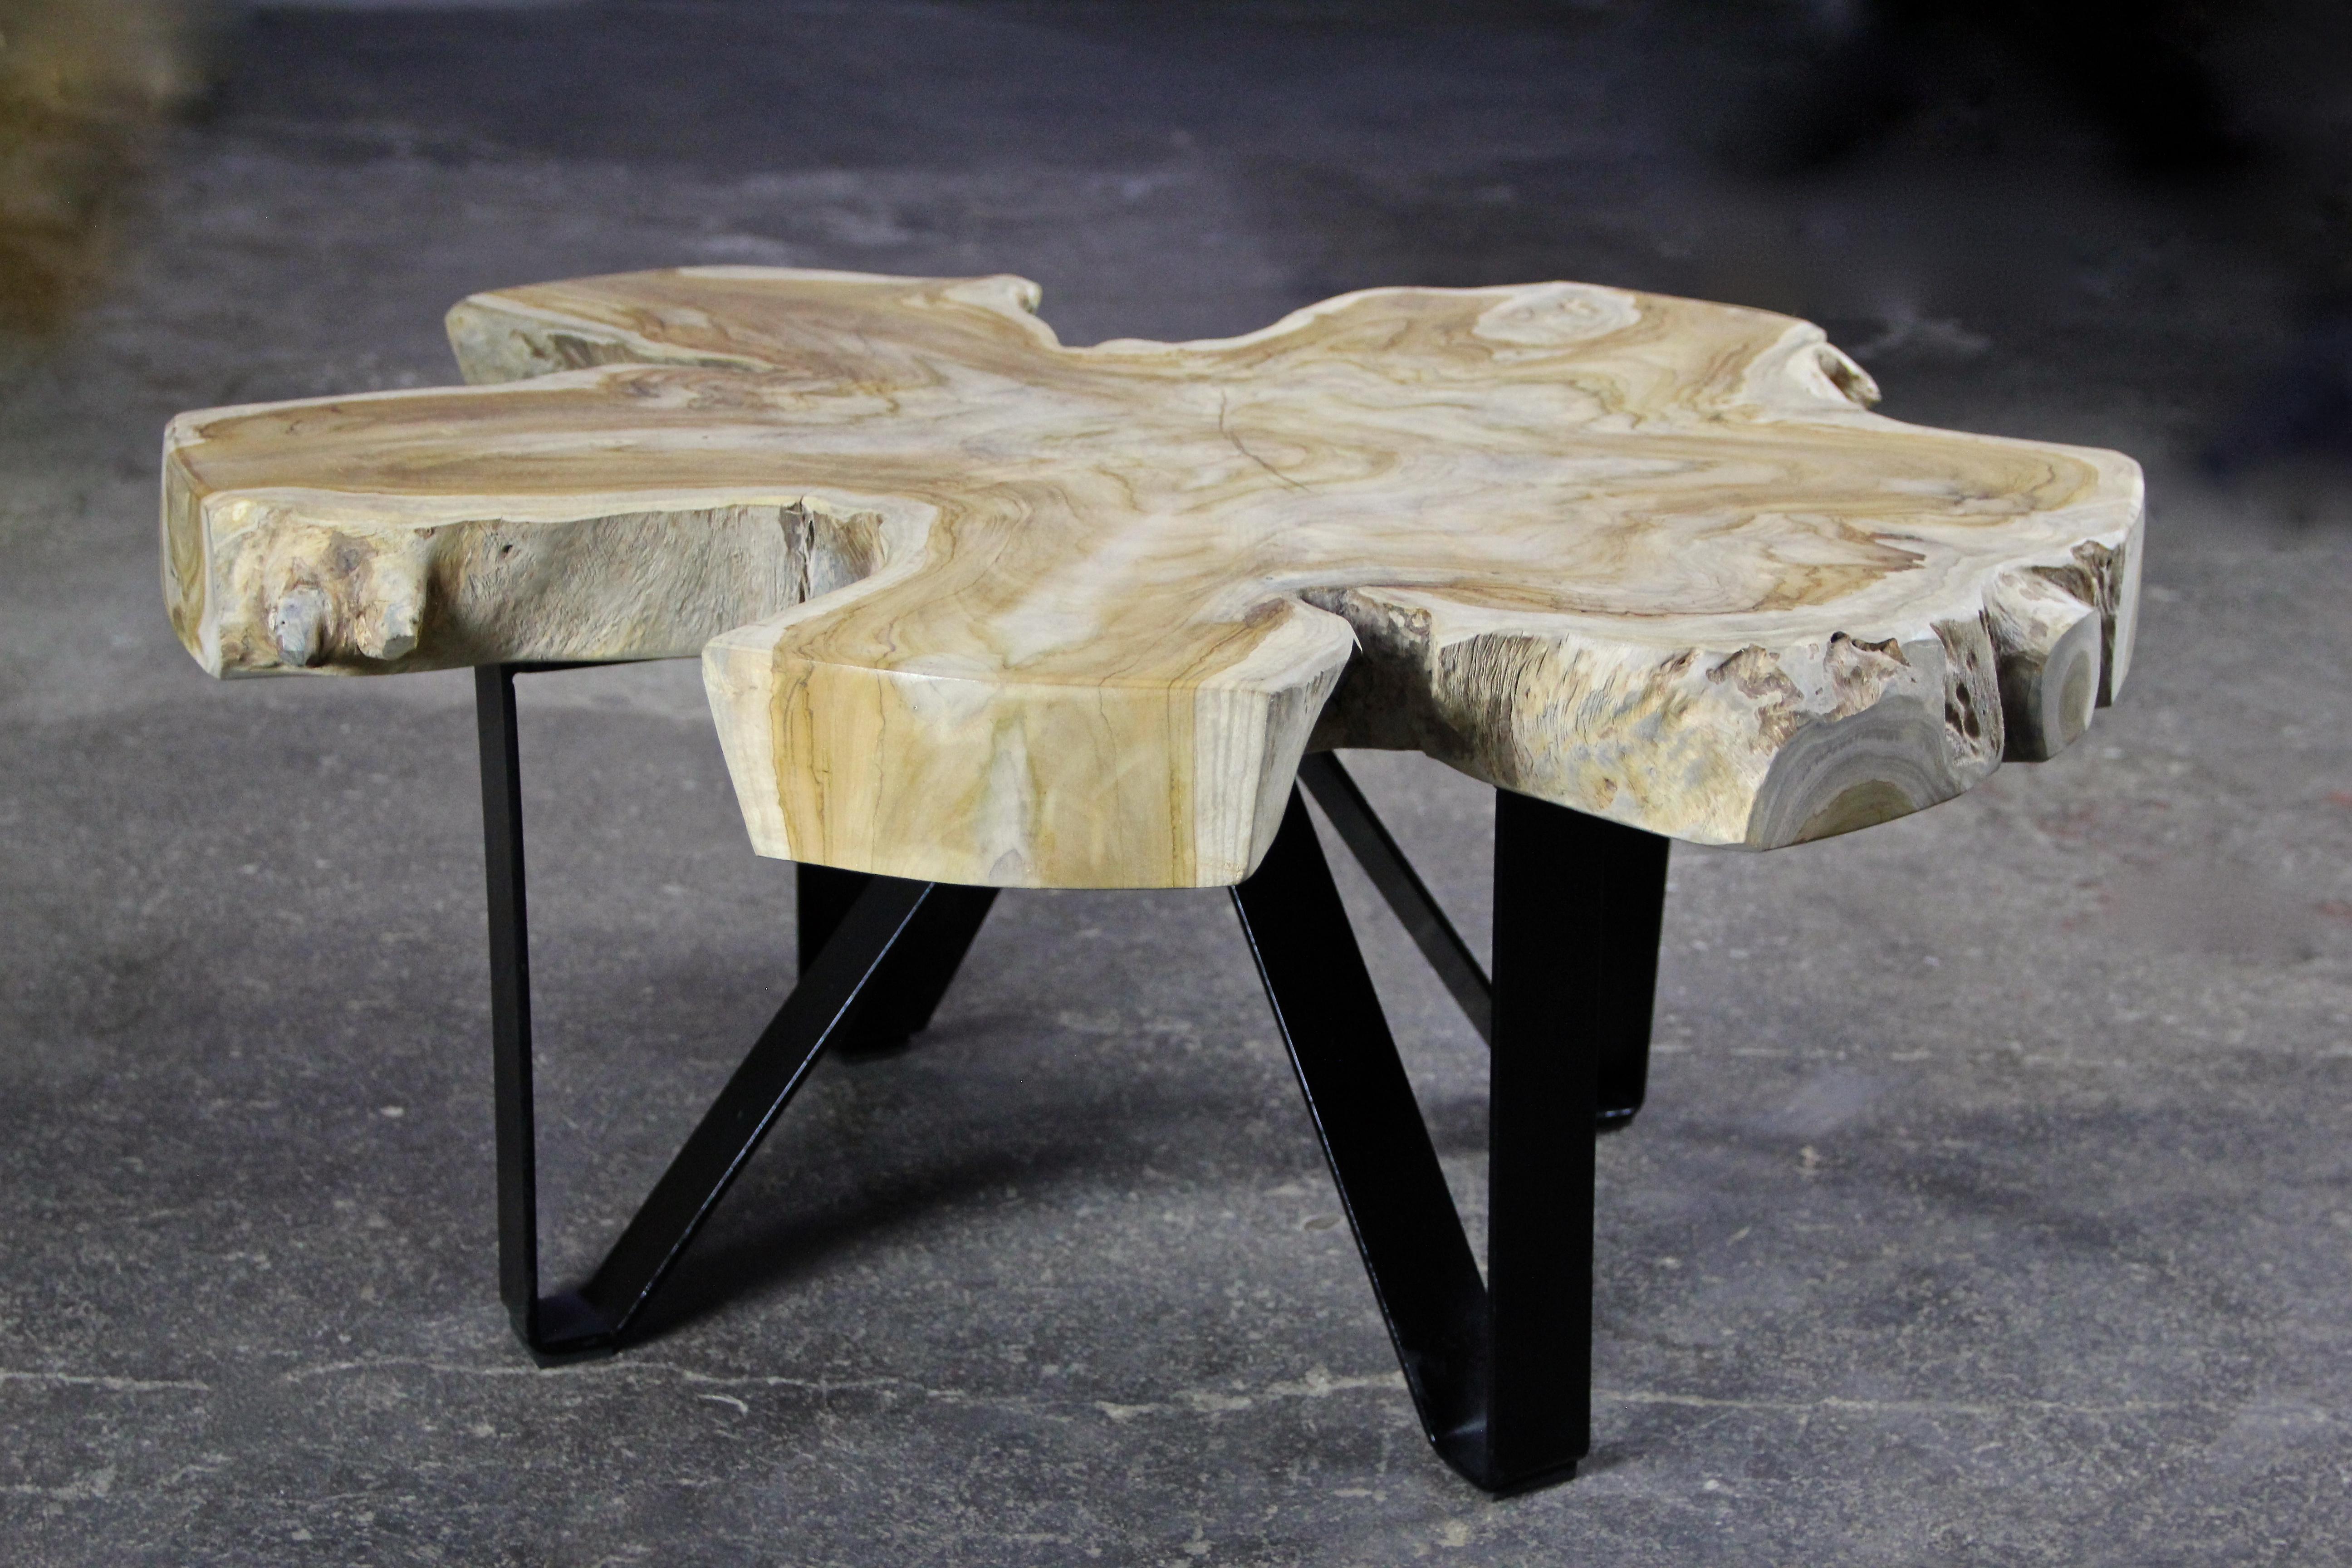 Teak Wood Coffee Table/ Sofa Table on Black Metal Feet, Organic Modern 1